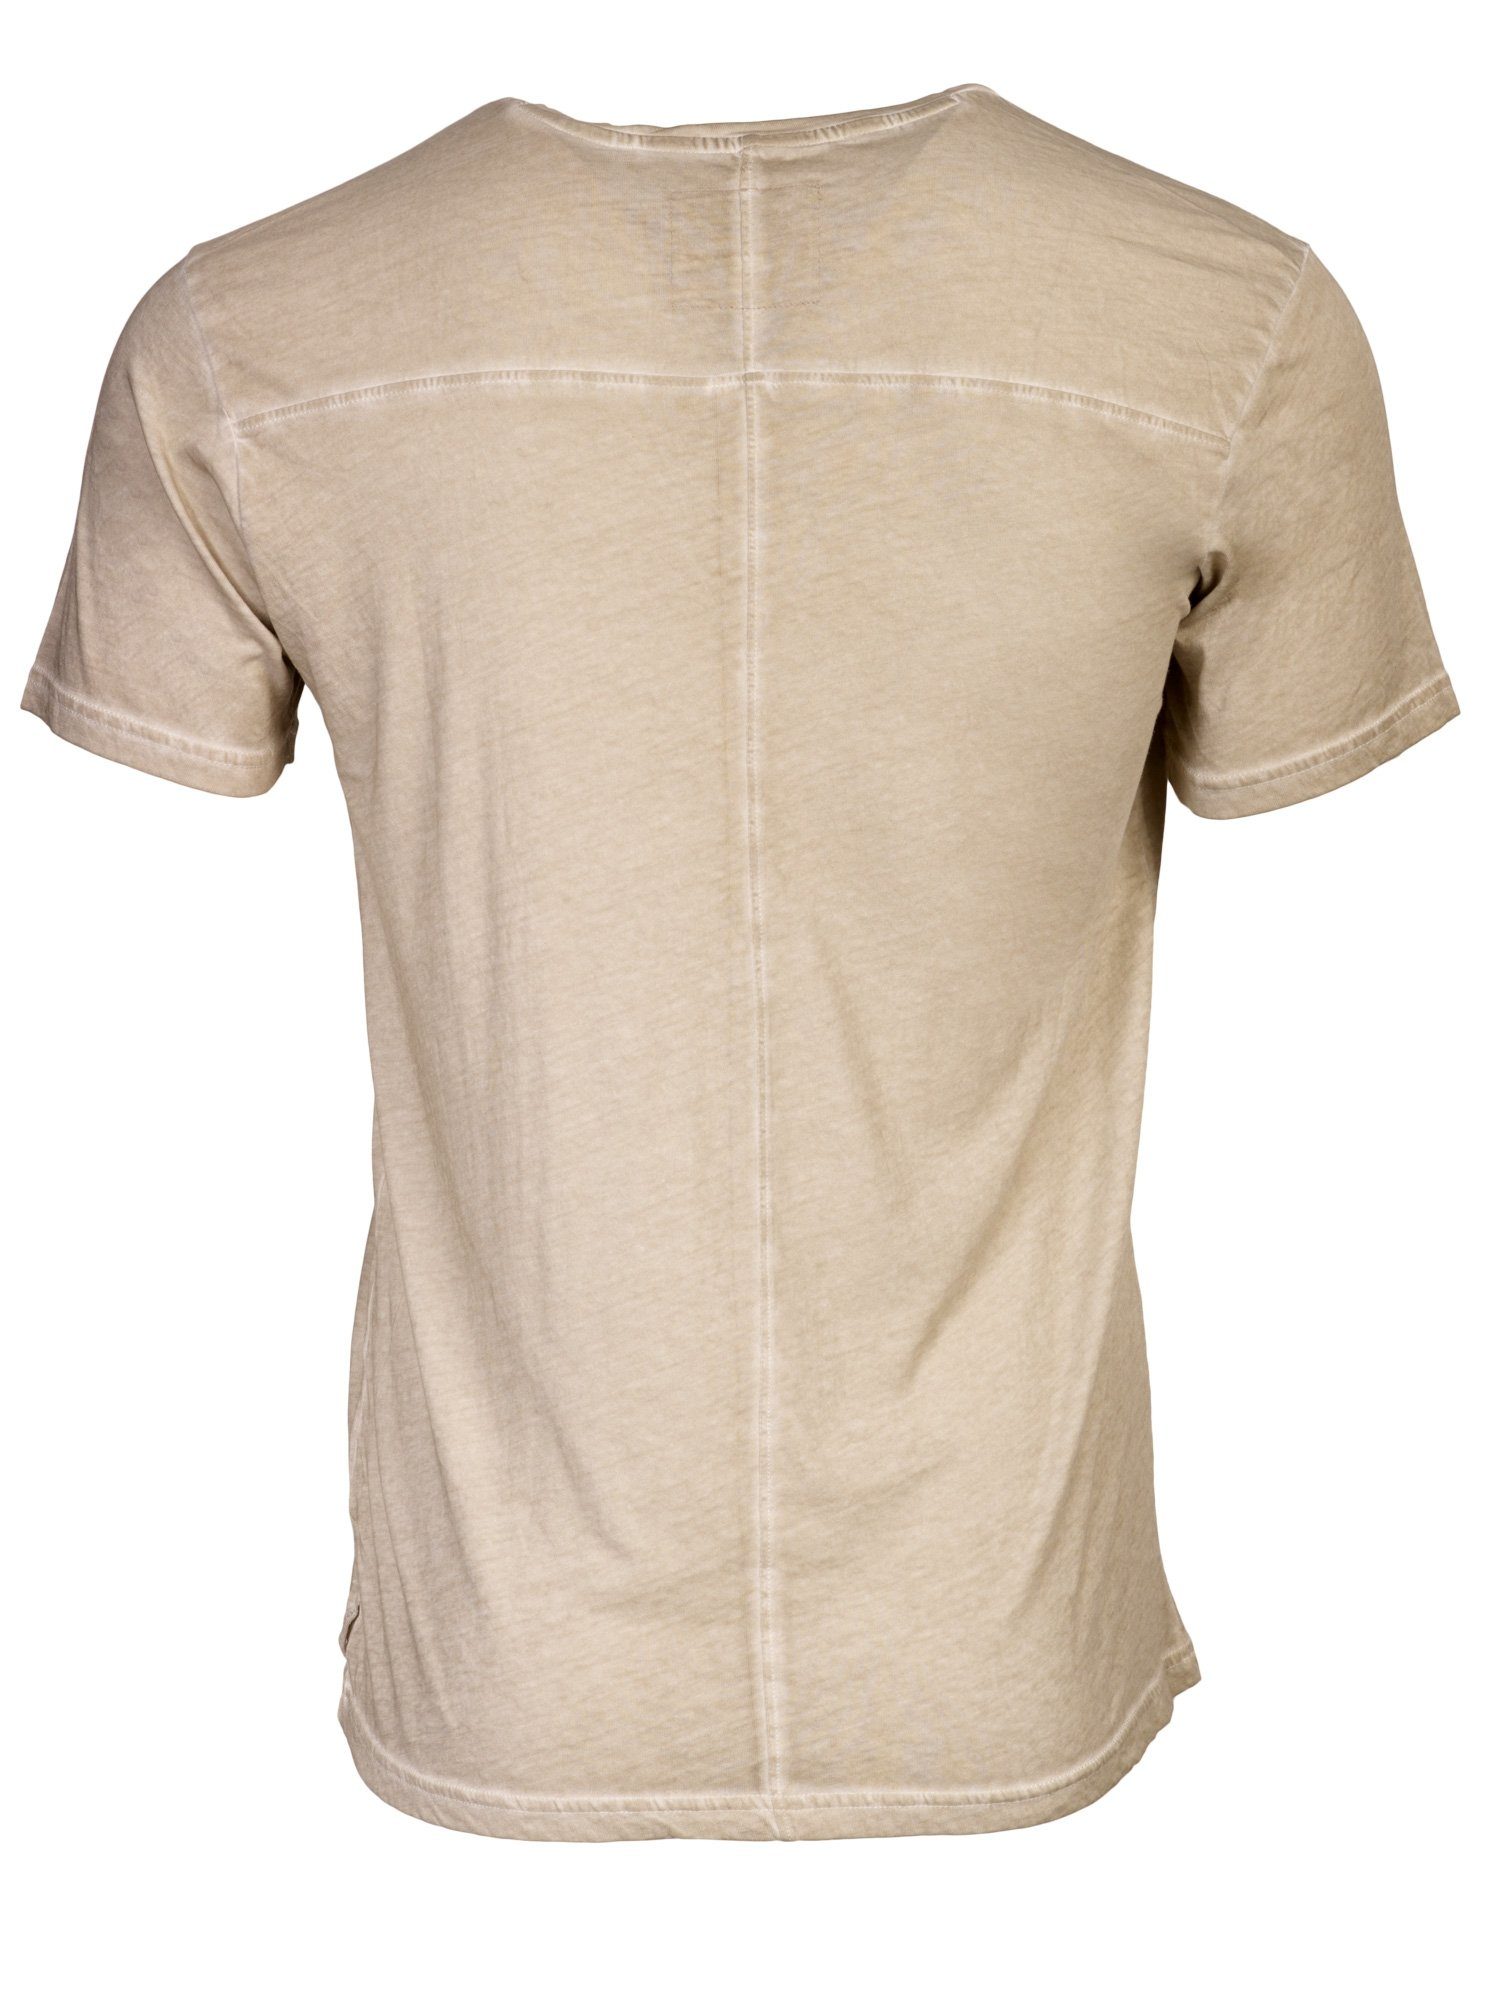 DAILY´S softes KIMI: Dunkler T-Shirt 100% T-Shirt Sand Biobaumwolle Herren aus